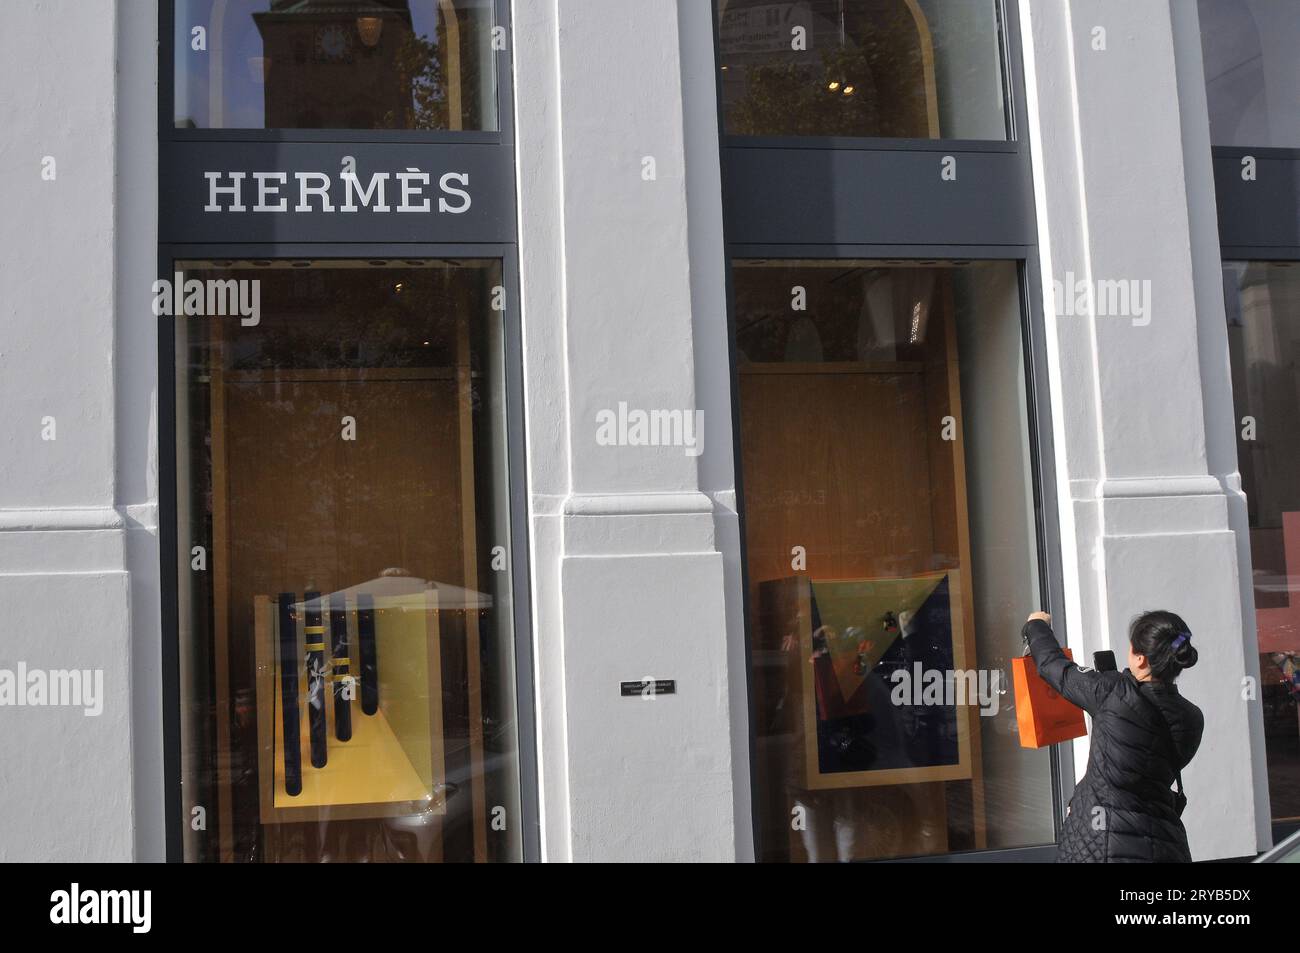 Hermes store Stock Photo by ©Krasnevsky 46672203